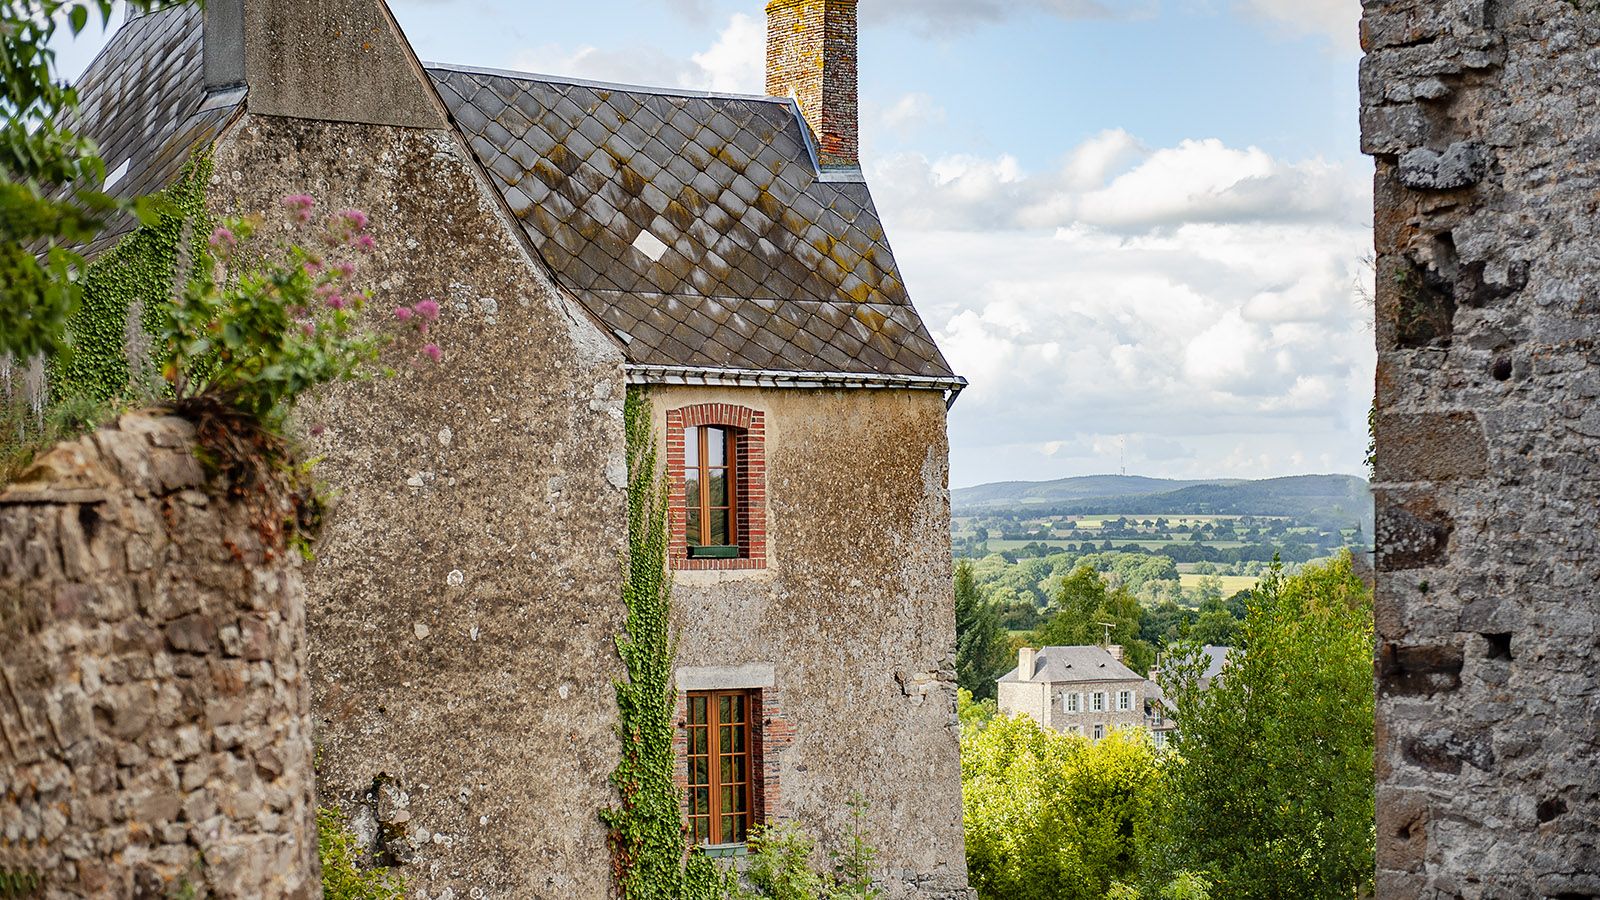 Sainte-Suzanne gehört zu den schönsten Dörfern von Mayenne und ist ausgezeichnet als <em>plus beau village de France</em>. Foto: Hilke Maunder